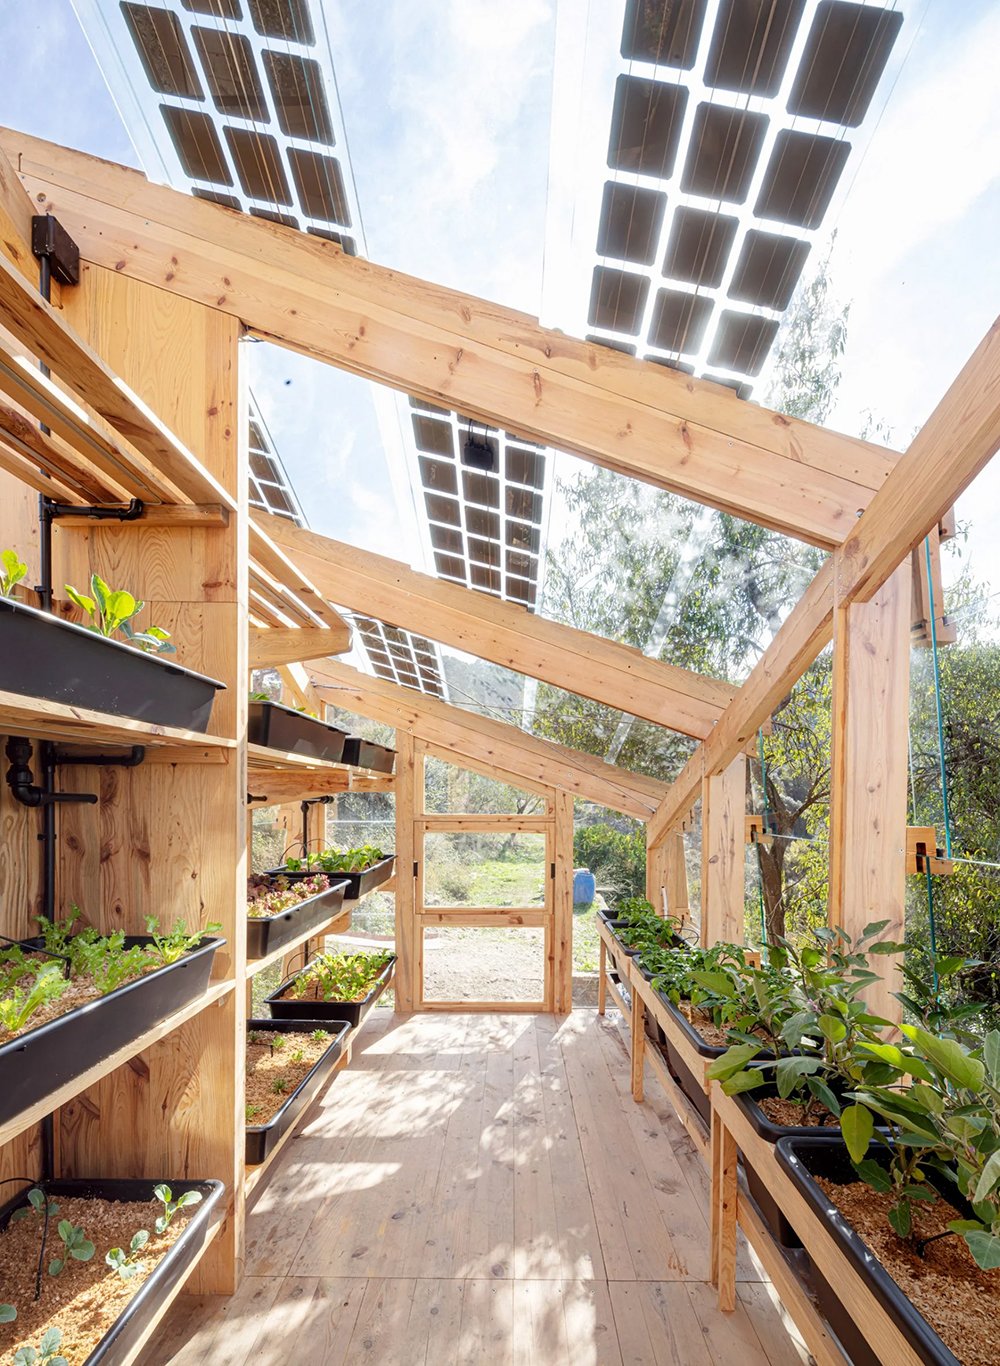 »Das Solar-Gewächshaus stellt den nächsten Schritt in Richtung einer ökologischeren und landwirtschaftlichen Transformation dar sowie den Fortschritt bei der Bekämpfung von Nahrungsmittel- und Energiearmut«, so das IAAC-Designteam um Vicente Guallard und Daniel Ibañez. iaac.net